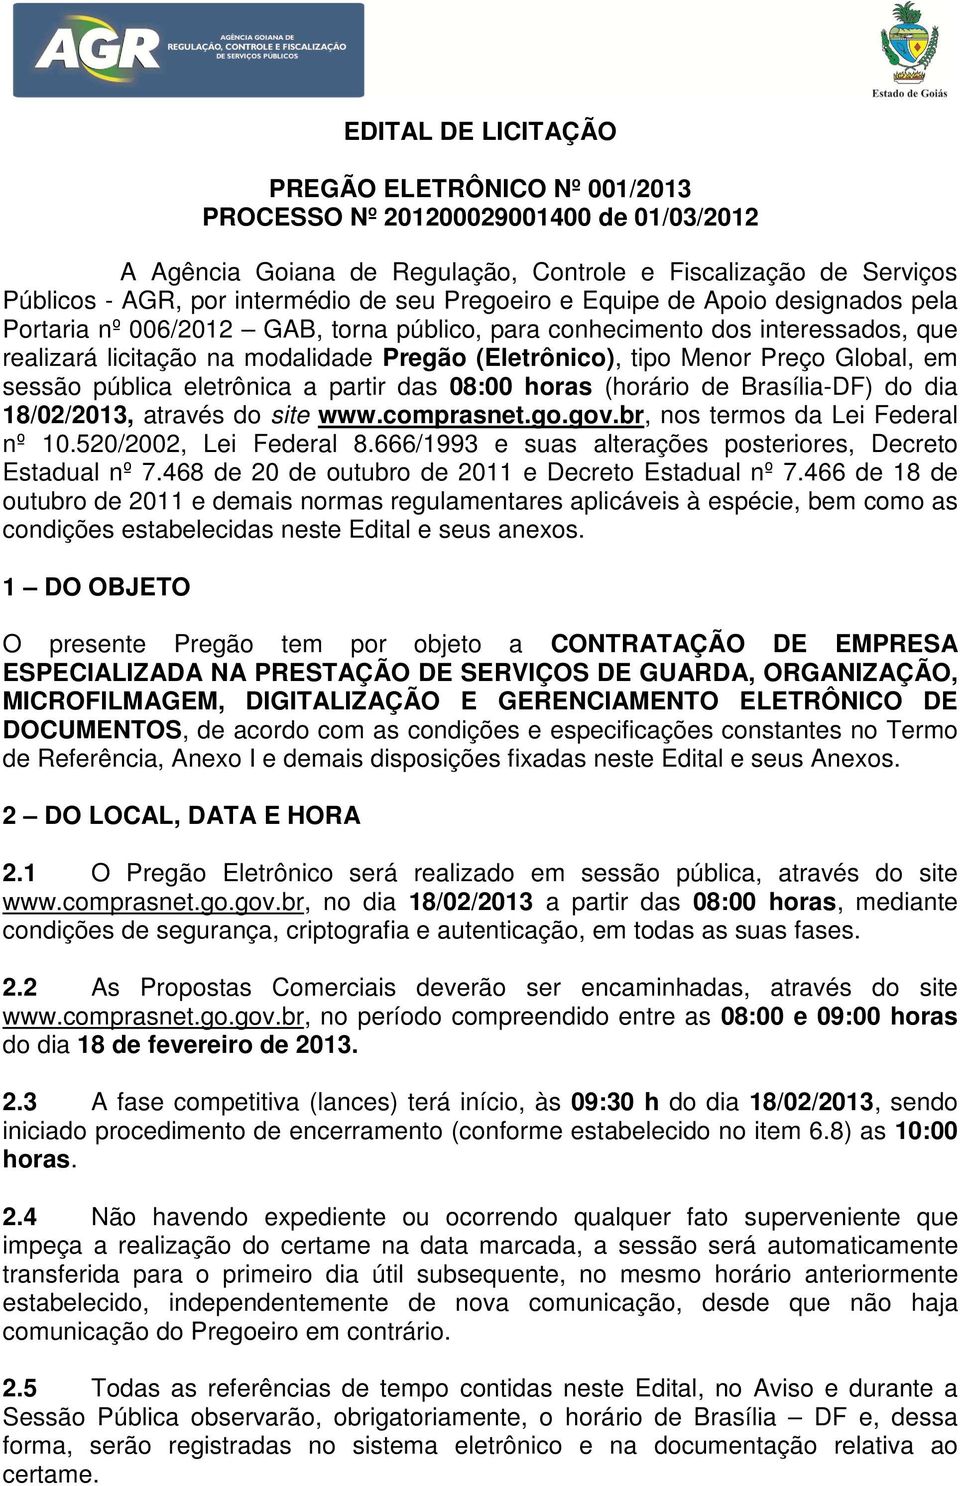 Global, em sessão pública eletrônica a partir das 08:00 horas (horário de Brasília-DF) do dia 18/02/2013, através do site www.comprasnet.go.gov.br, nos termos da Lei Federal nº 10.